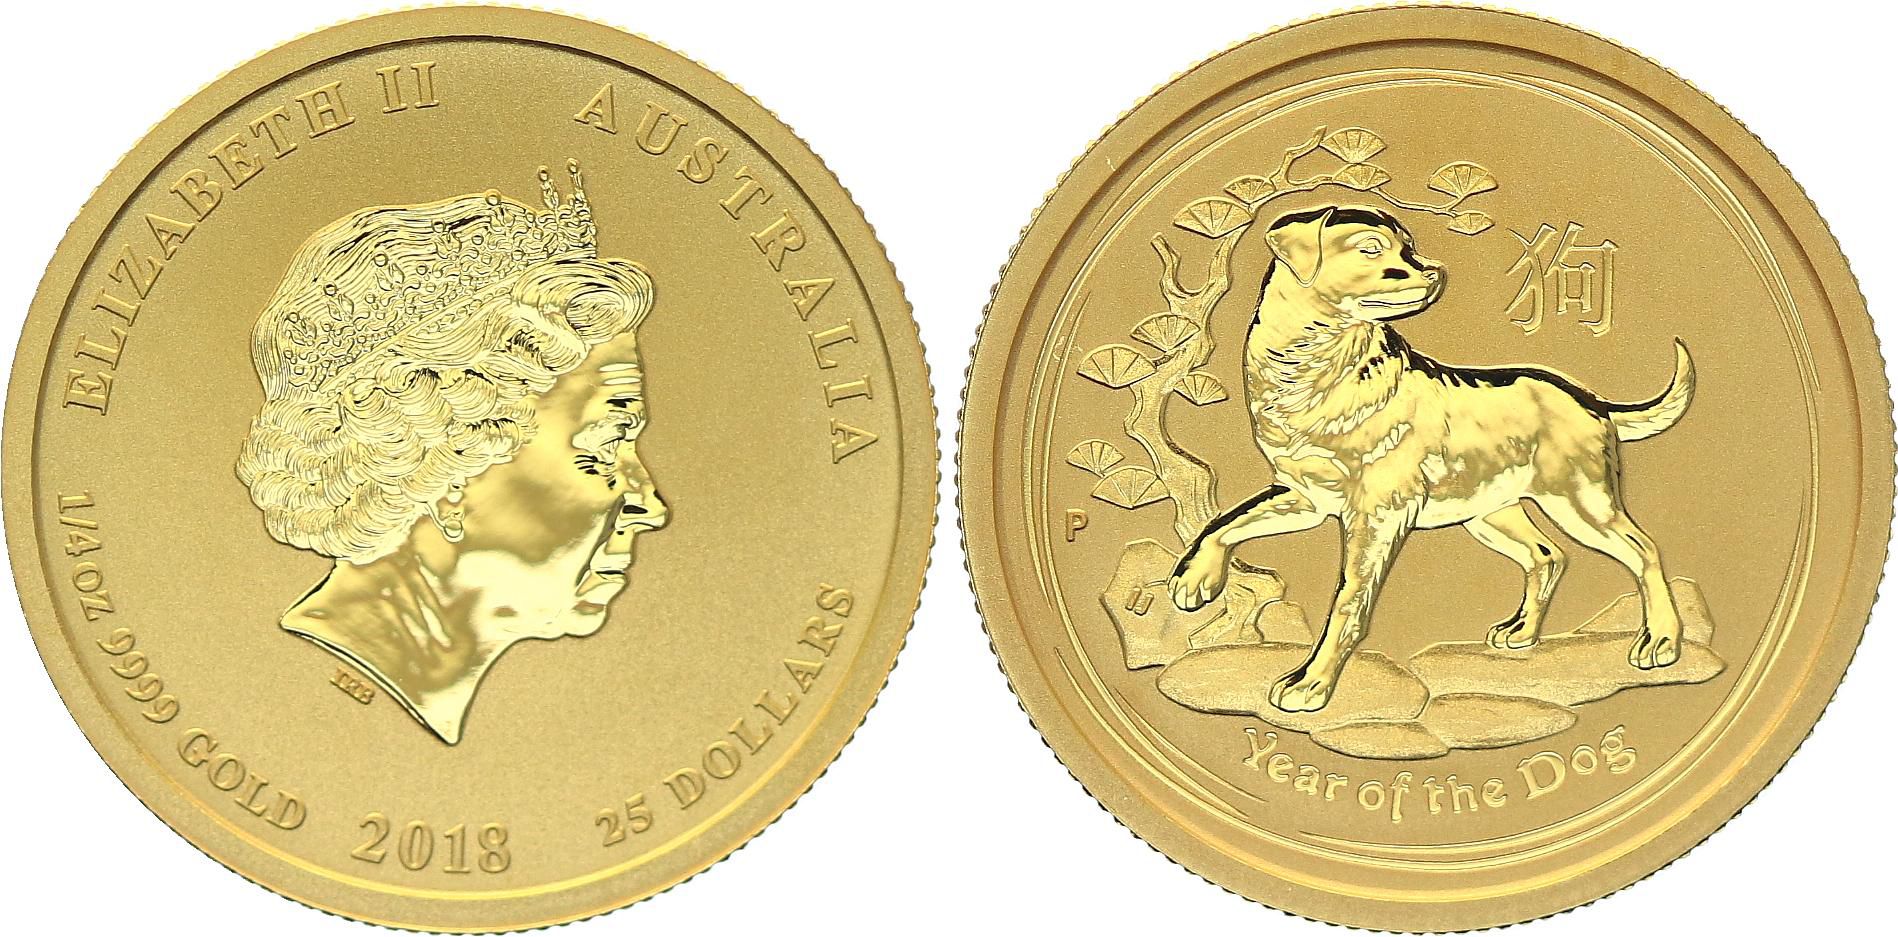 Coin Australia Dollars Elizabeth II - Year of Dog Gold 1/4 Oz 2018